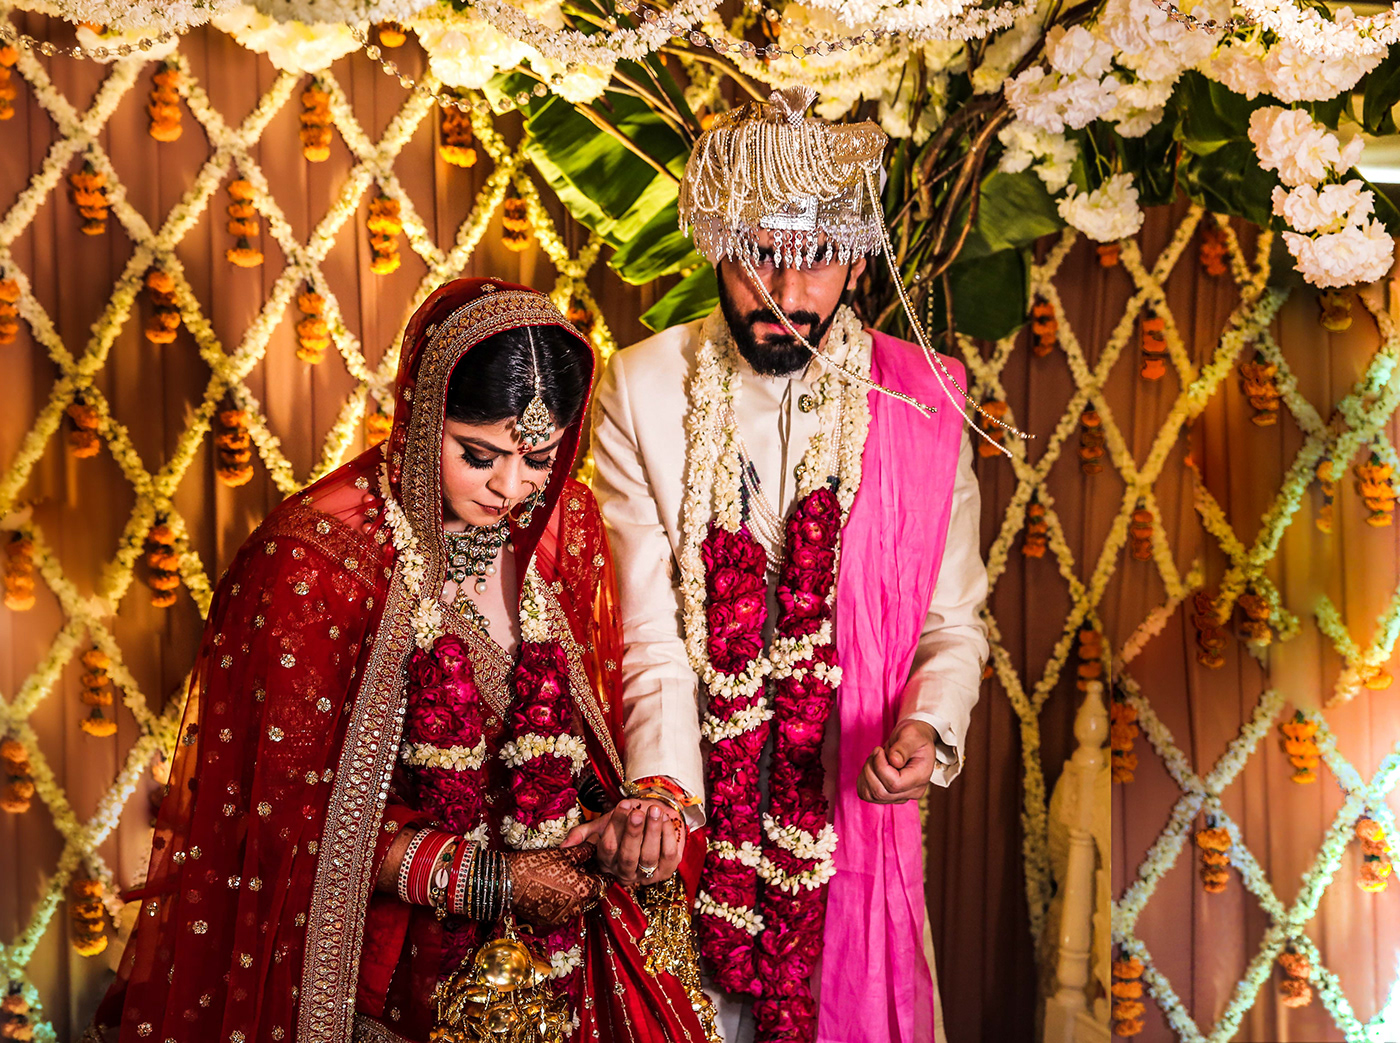 #lockdownwedding 2020wedding covidwedding homewedding indianwedding weddingphotography